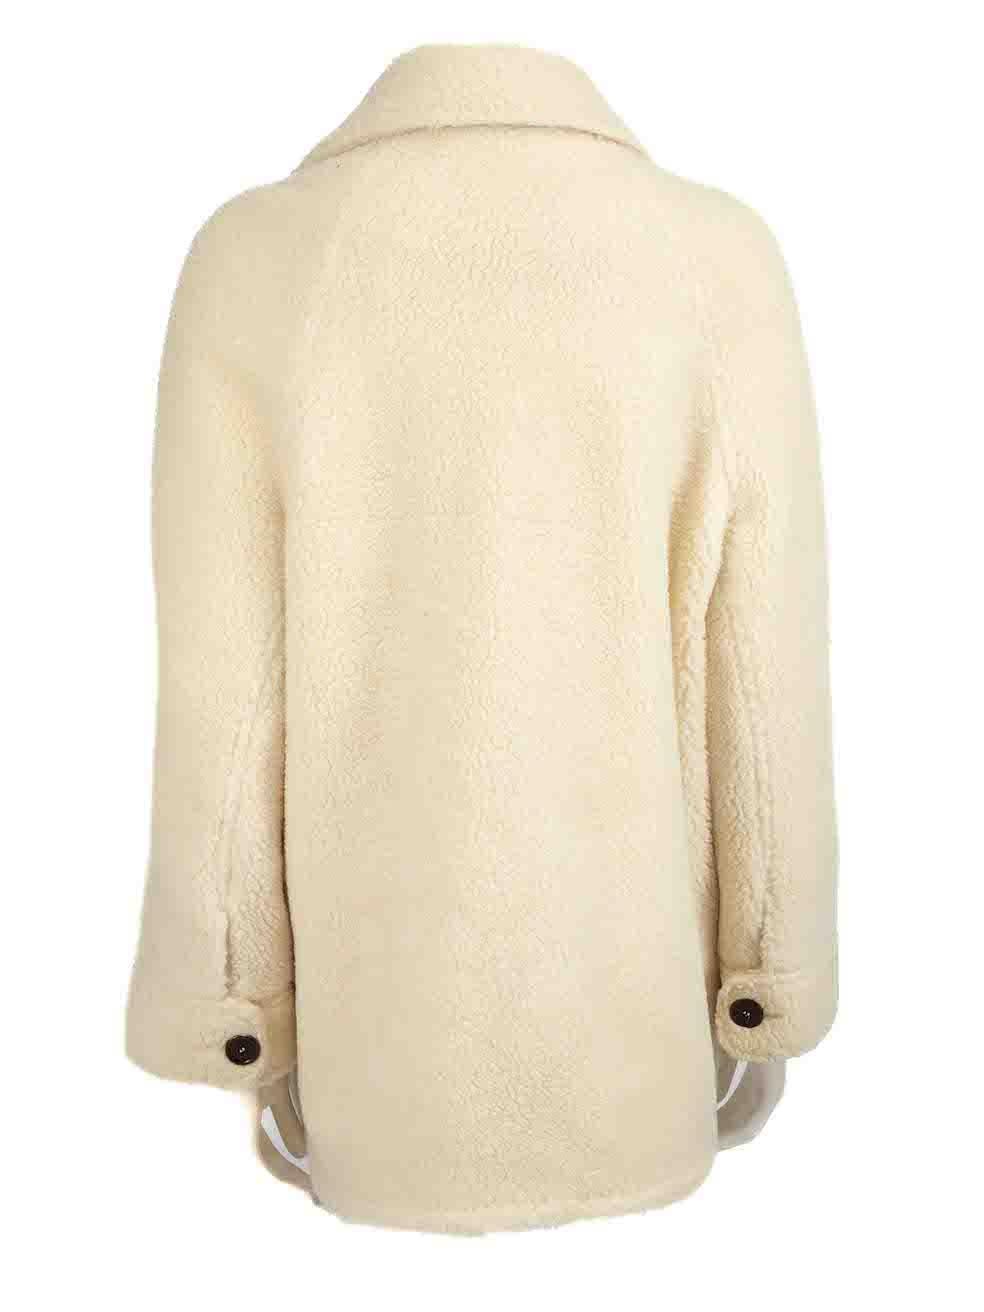 Sézane Ecru Wool Borg Fleece Jacket Size M In Good Condition For Sale In London, GB